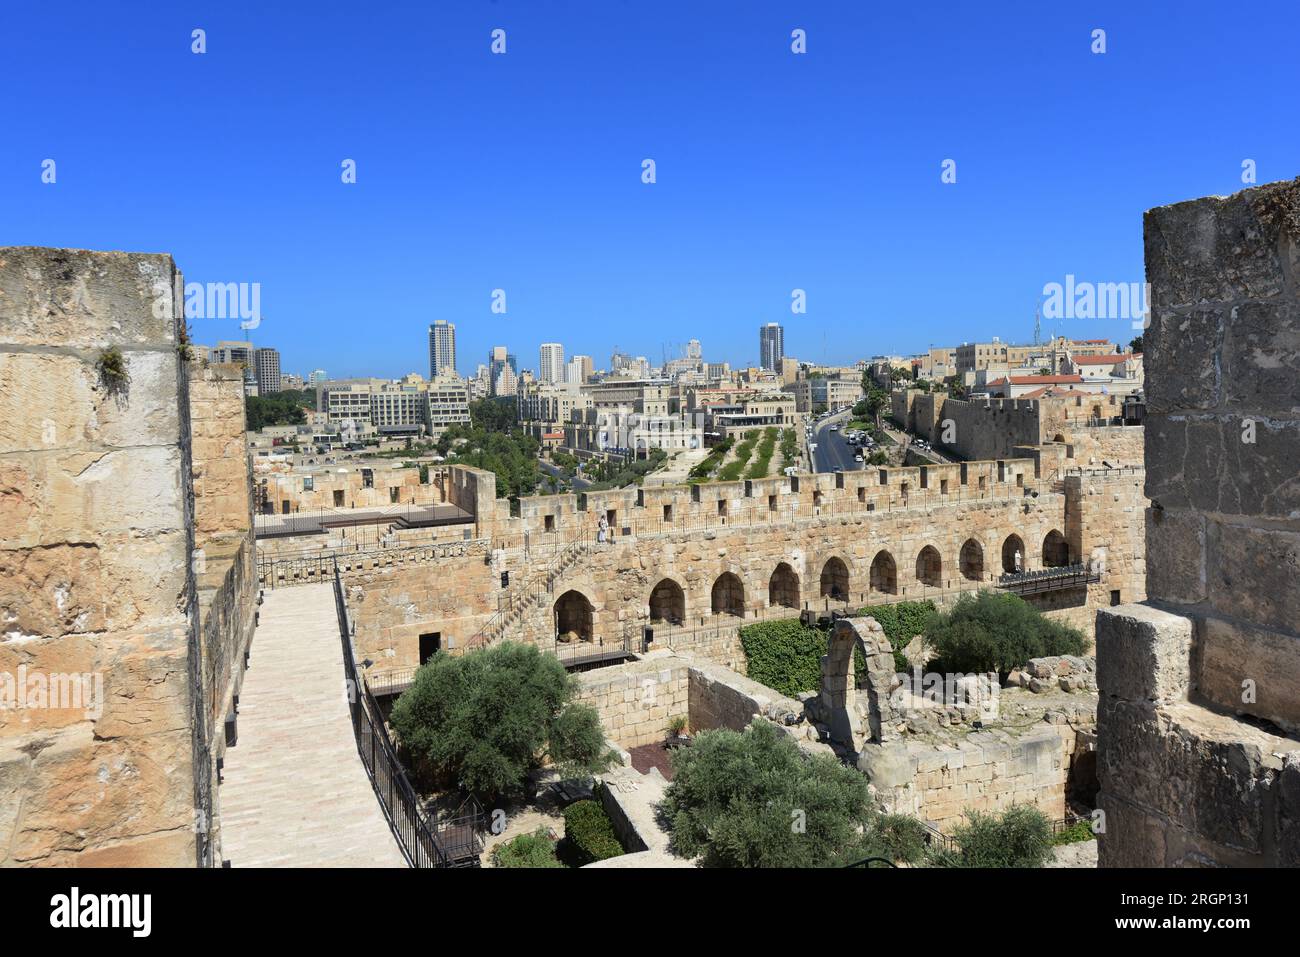 Una vista del terreno interior de la Ciudadela con las excavaciones arqueológicas. Museo de la Torre de David, Ciudad Vieja de Jerusalén, Israel. Foto de stock